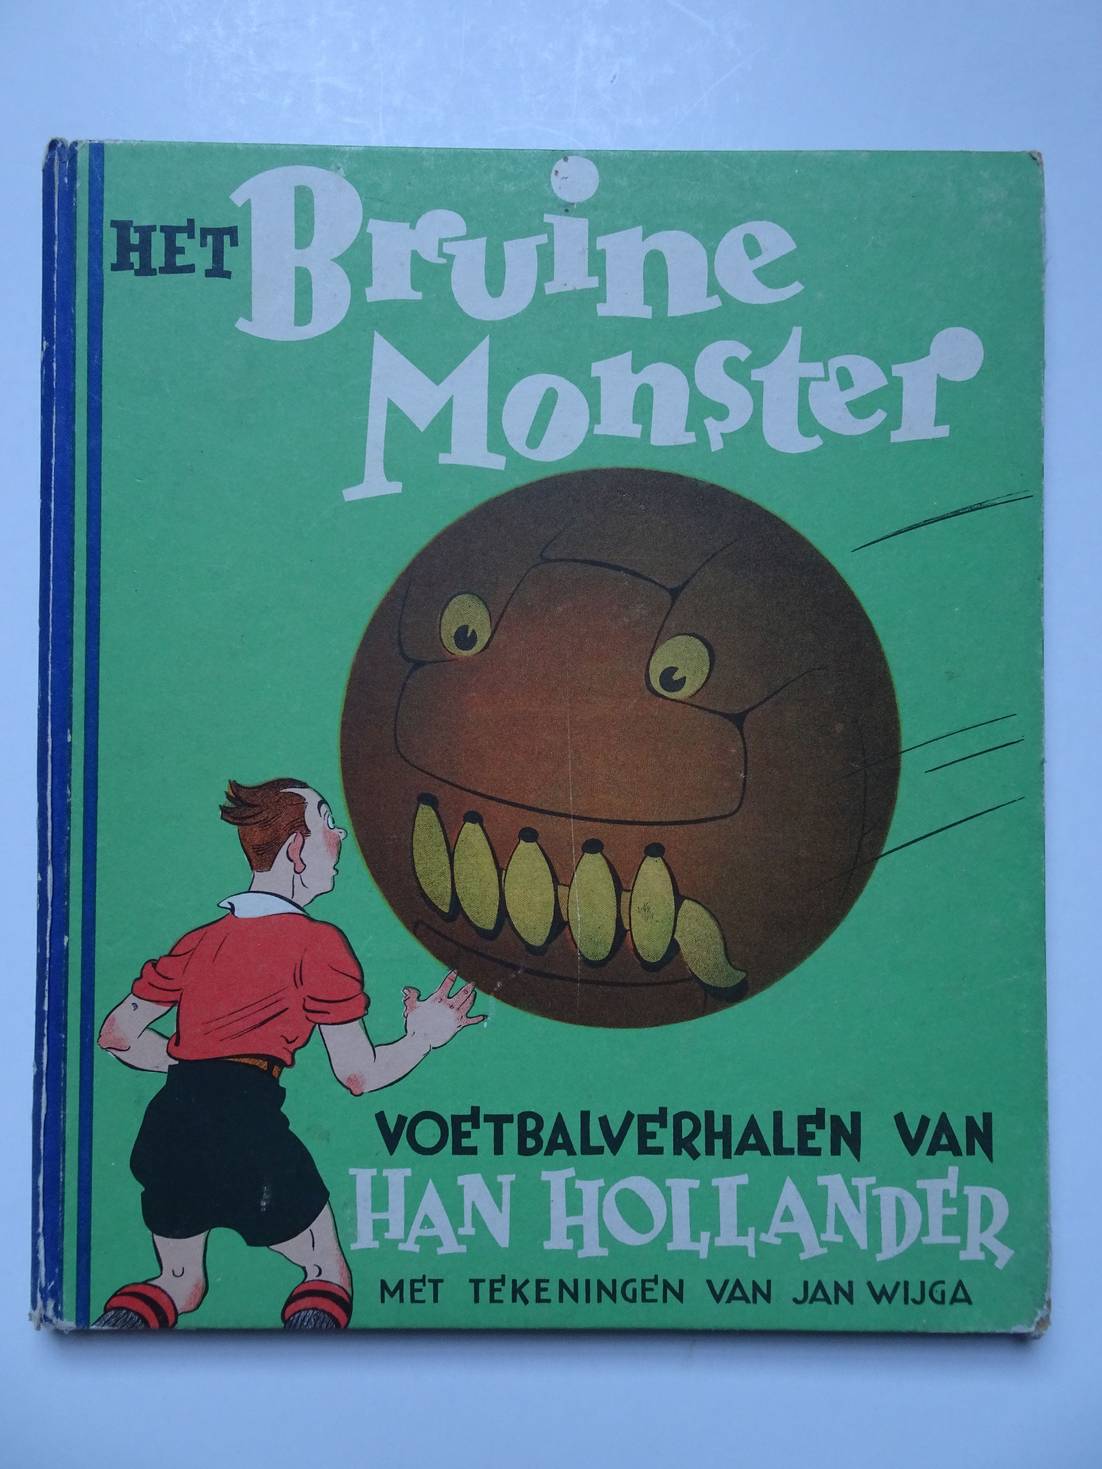 Hollander, Han & Jan Wijga. - Het Bruine Monster. Voetbalverhalen van Han Hollander.